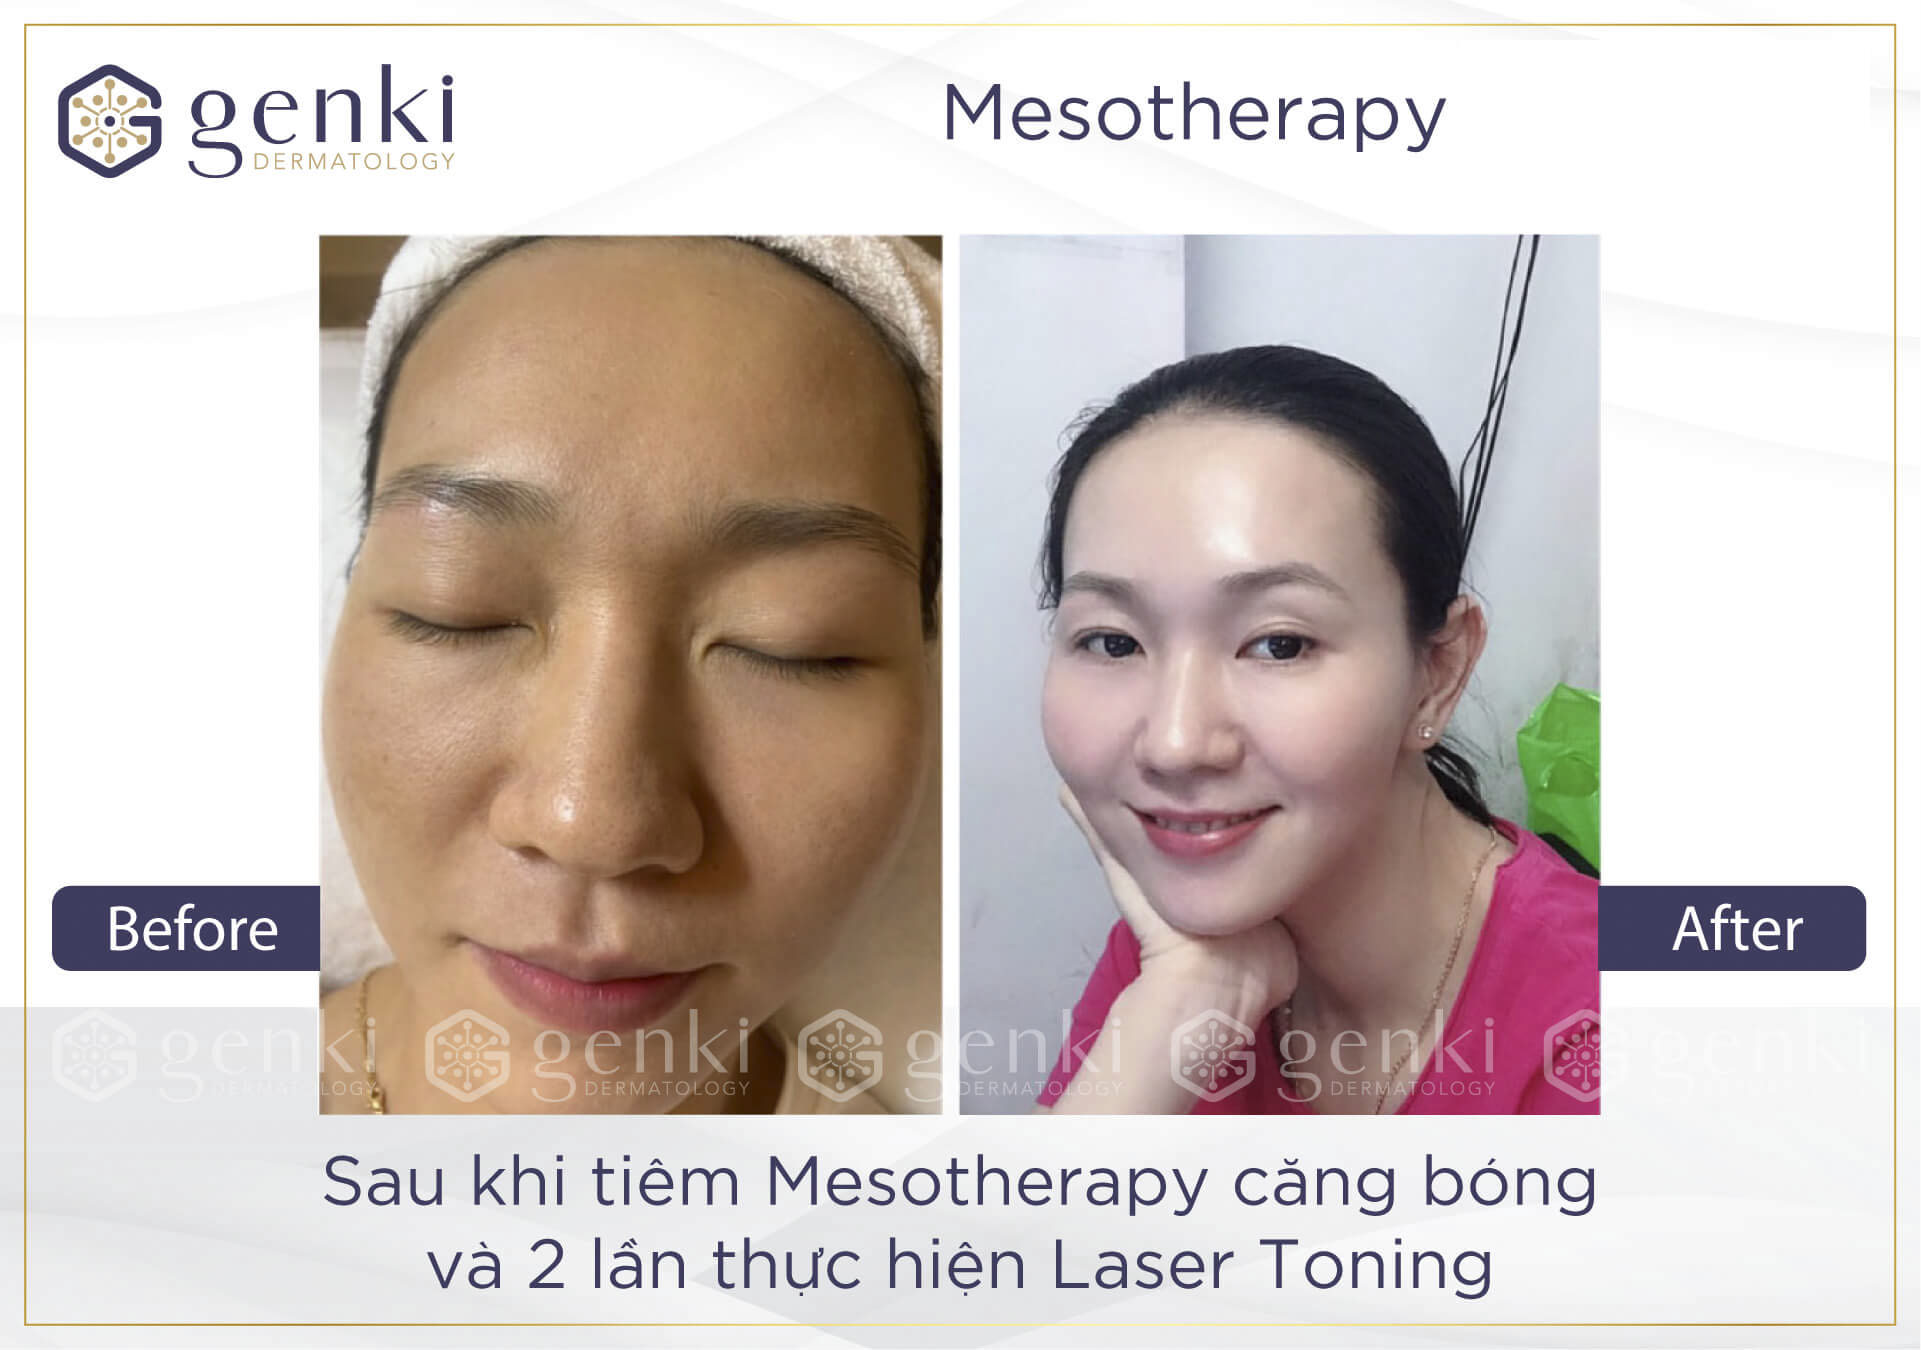 Sau khi thực hiện căng bóng da mặt bằng Mesotherapy bạn cần chú ý điều gì?